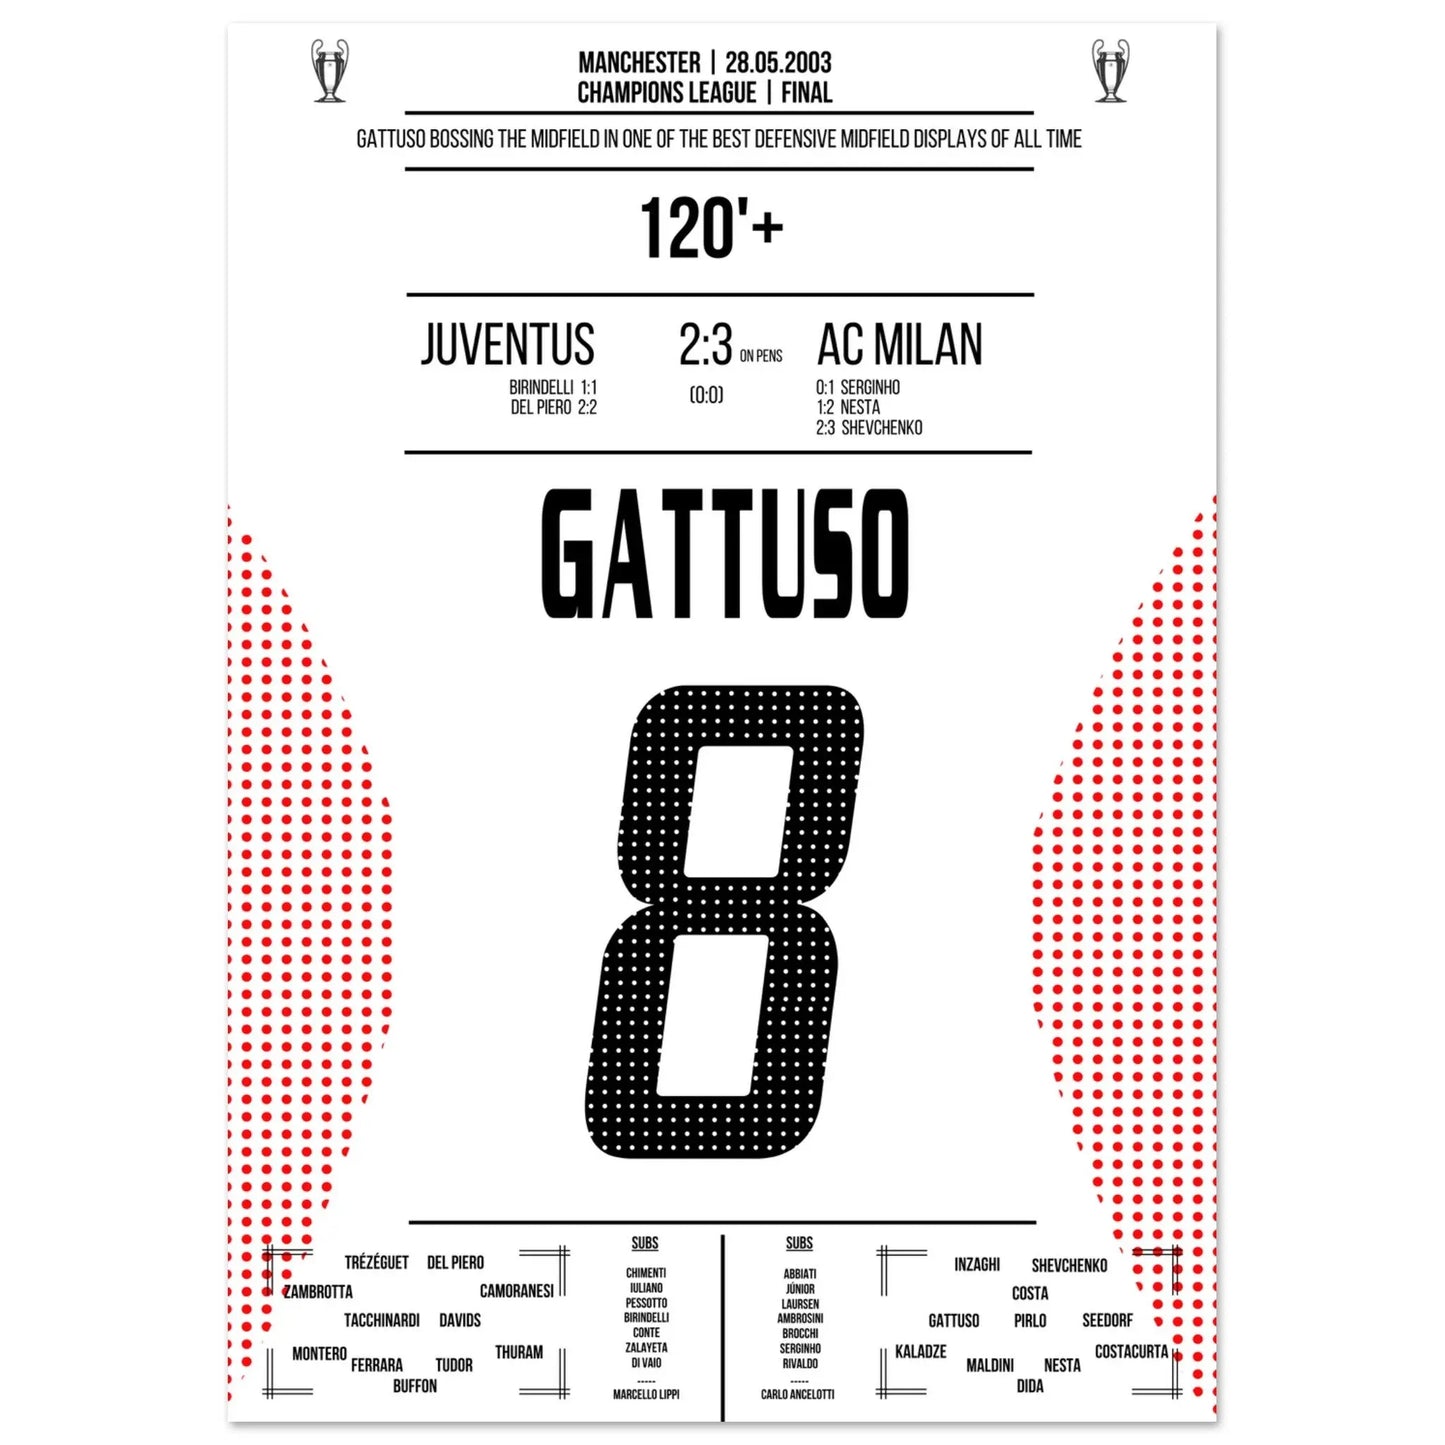 Jahrhundert-Defensivperformance von Gattuso im CL Finale 2003